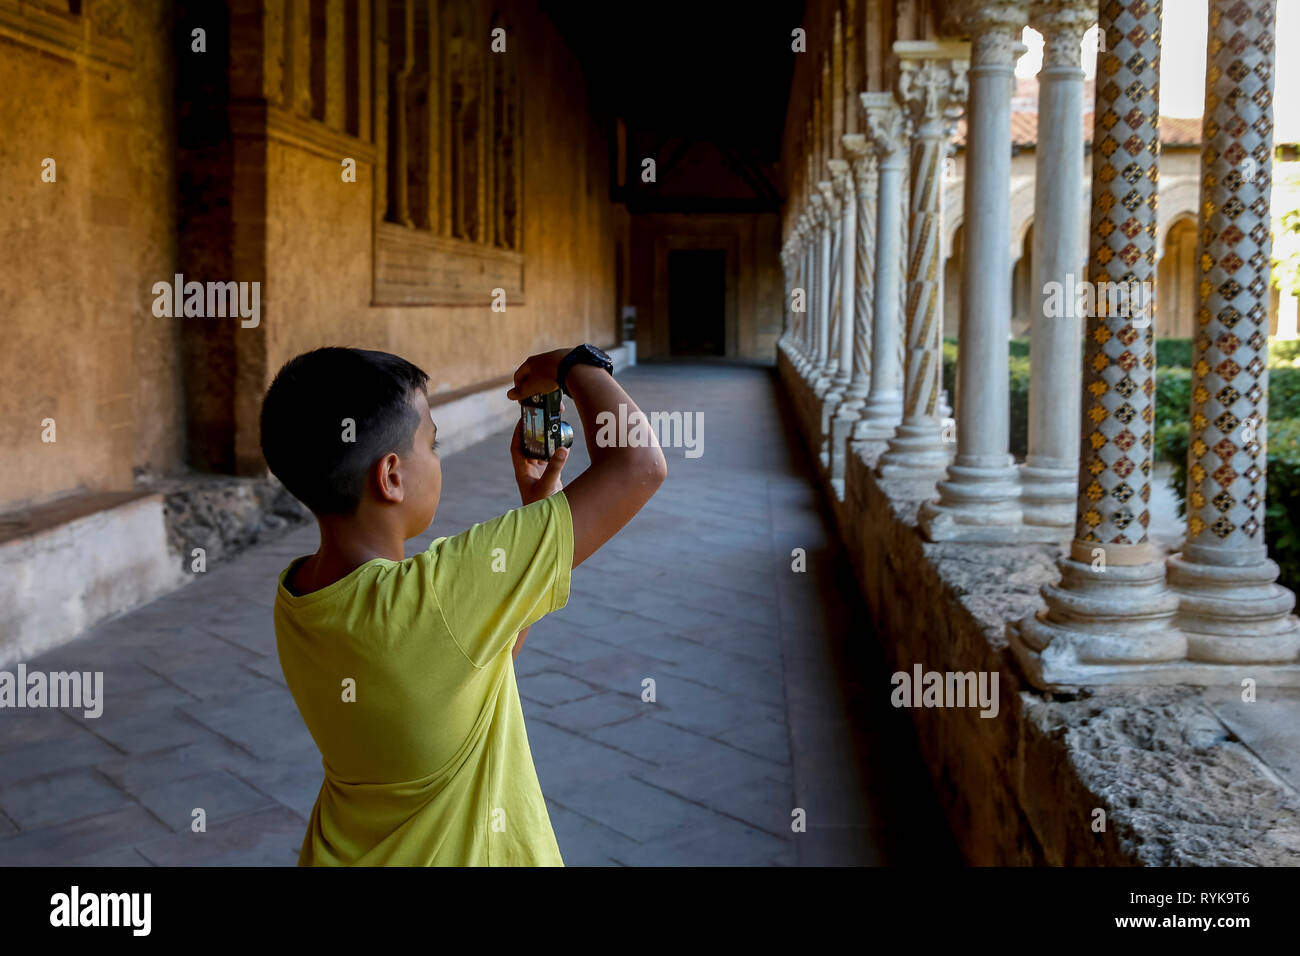 12-anno-vecchio ragazzo di prendere una fotografia nel chiostro della Cattedrale di Monreale, Sicilia (Italia). Foto Stock